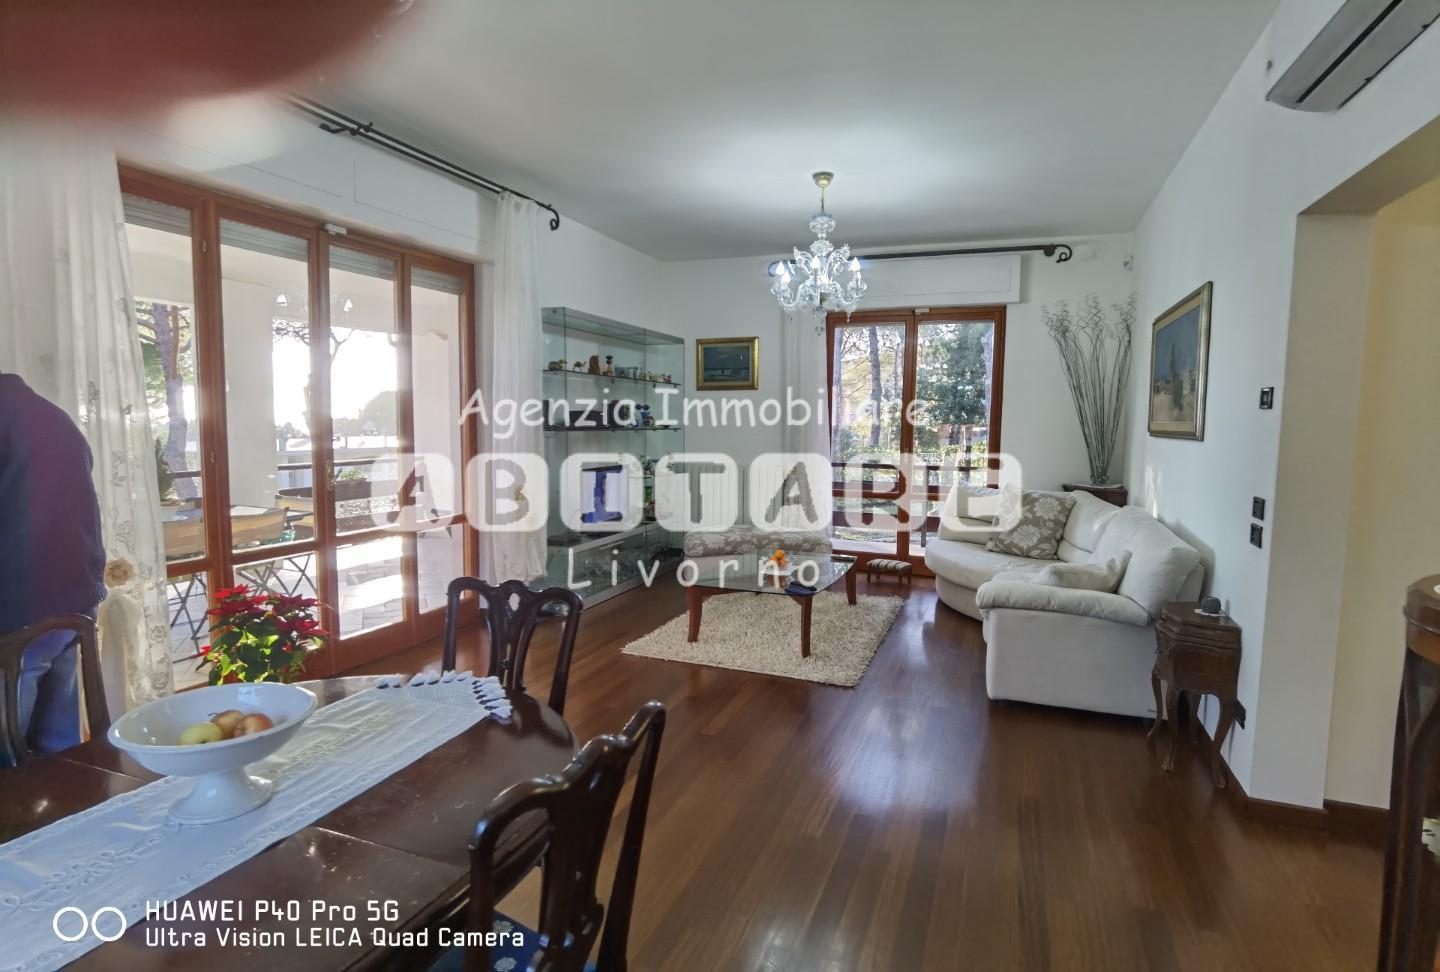 Villa in vendita a Livorno, 7 locali, prezzo € 842.000 | PortaleAgenzieImmobiliari.it